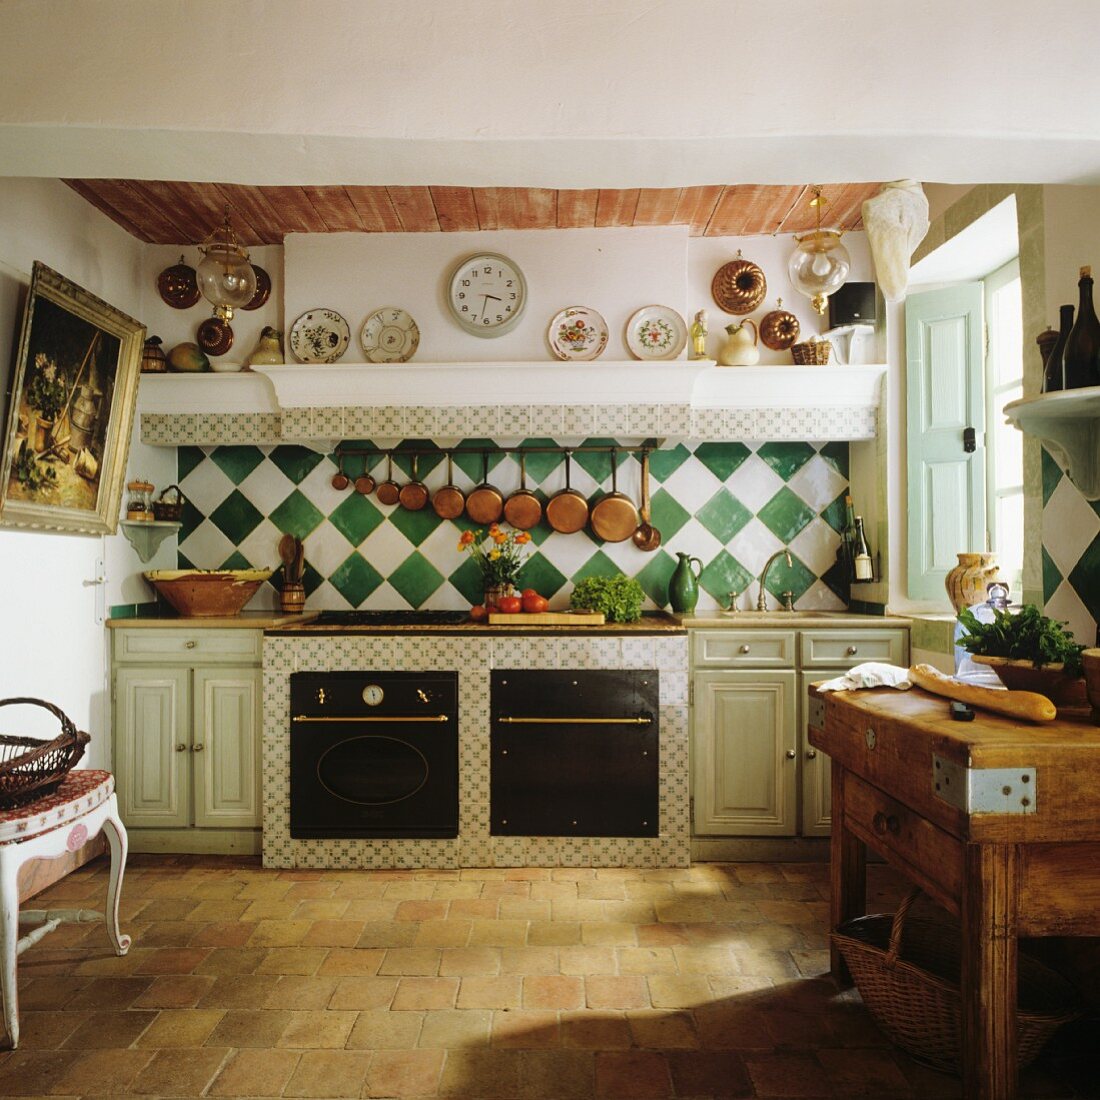 Traditionelle Landhausküche im französischen Stil mit Steinboden und karierten Wandfliesen